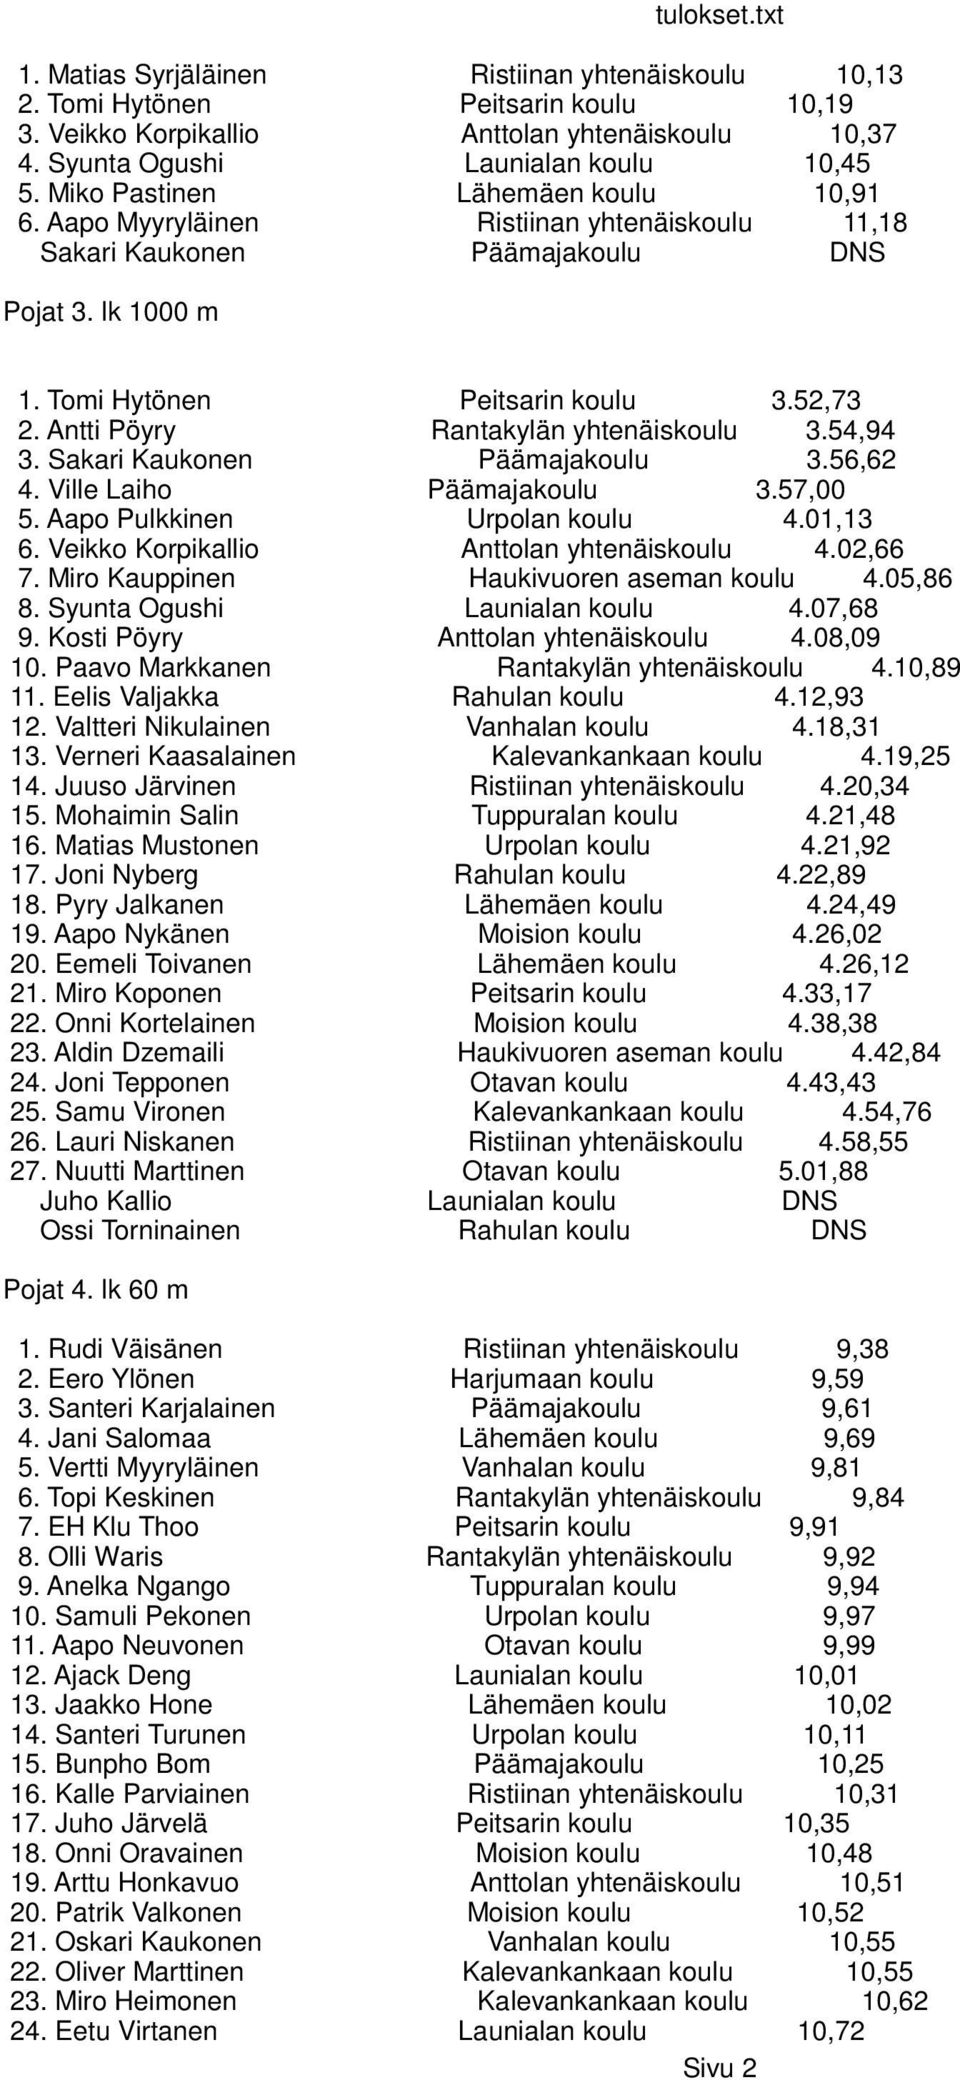 Antti Pöyry Rantakylän yhtenäiskoulu 3.54,94 3. Sakari Kaukonen Päämajakoulu 3.56,62 4. Ville Laiho Päämajakoulu 3.57,00 5. Aapo Pulkkinen Urpolan koulu 4.01,13 6.